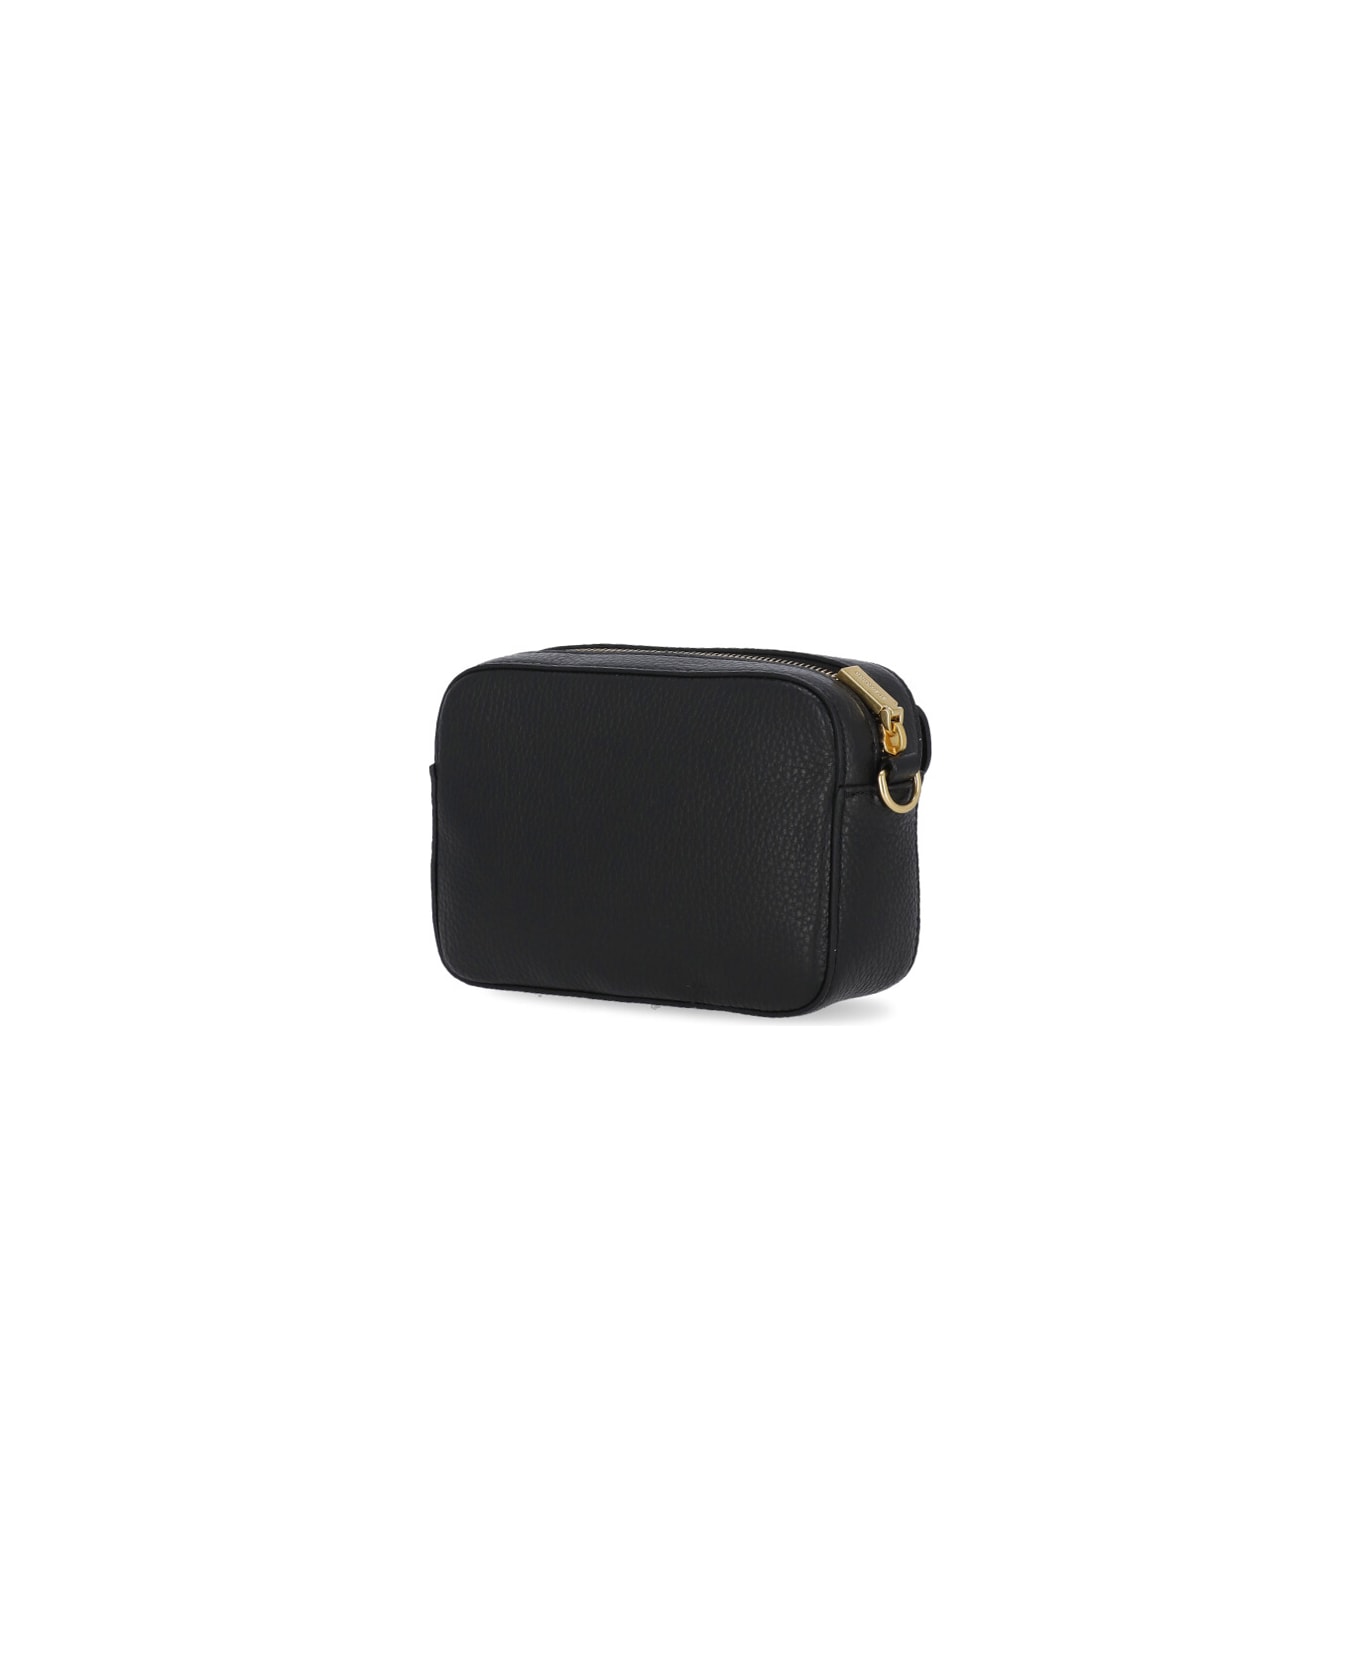 Coccinelle Beat Soft Mini Shoulder Bag - Black